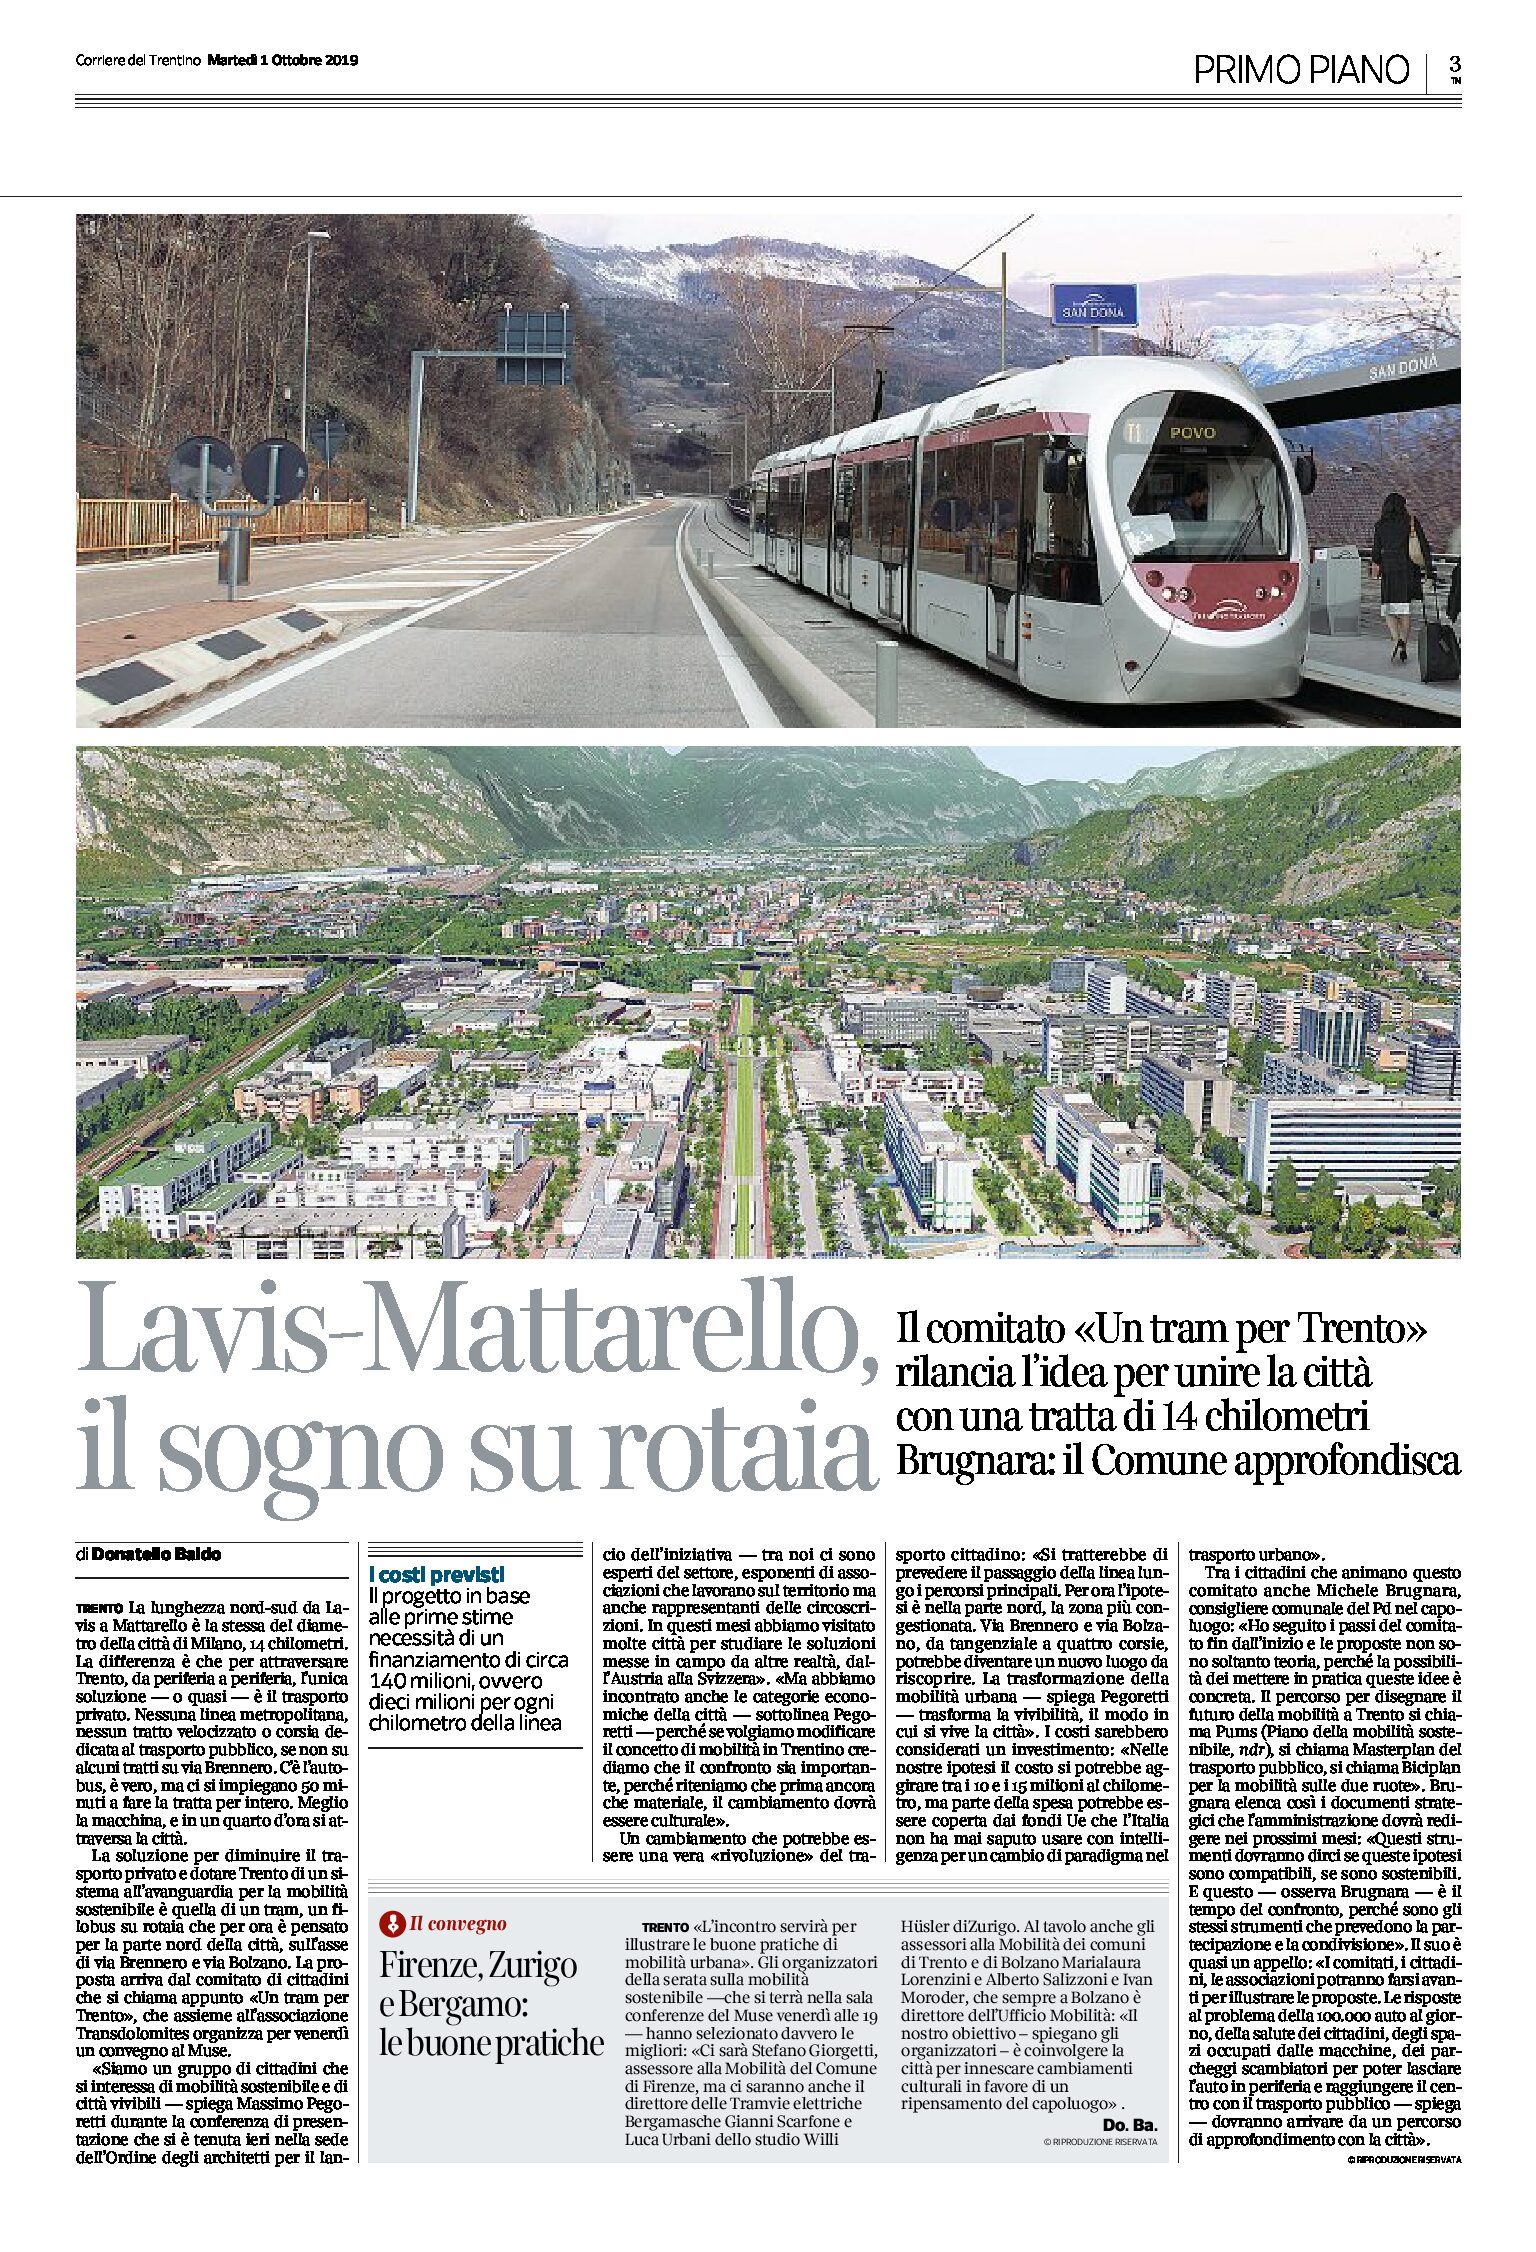 Lavis-Mattarello: il sogno su rotaia. Il comitato “Un tram per Trento” rilancia l’idea per unire la città